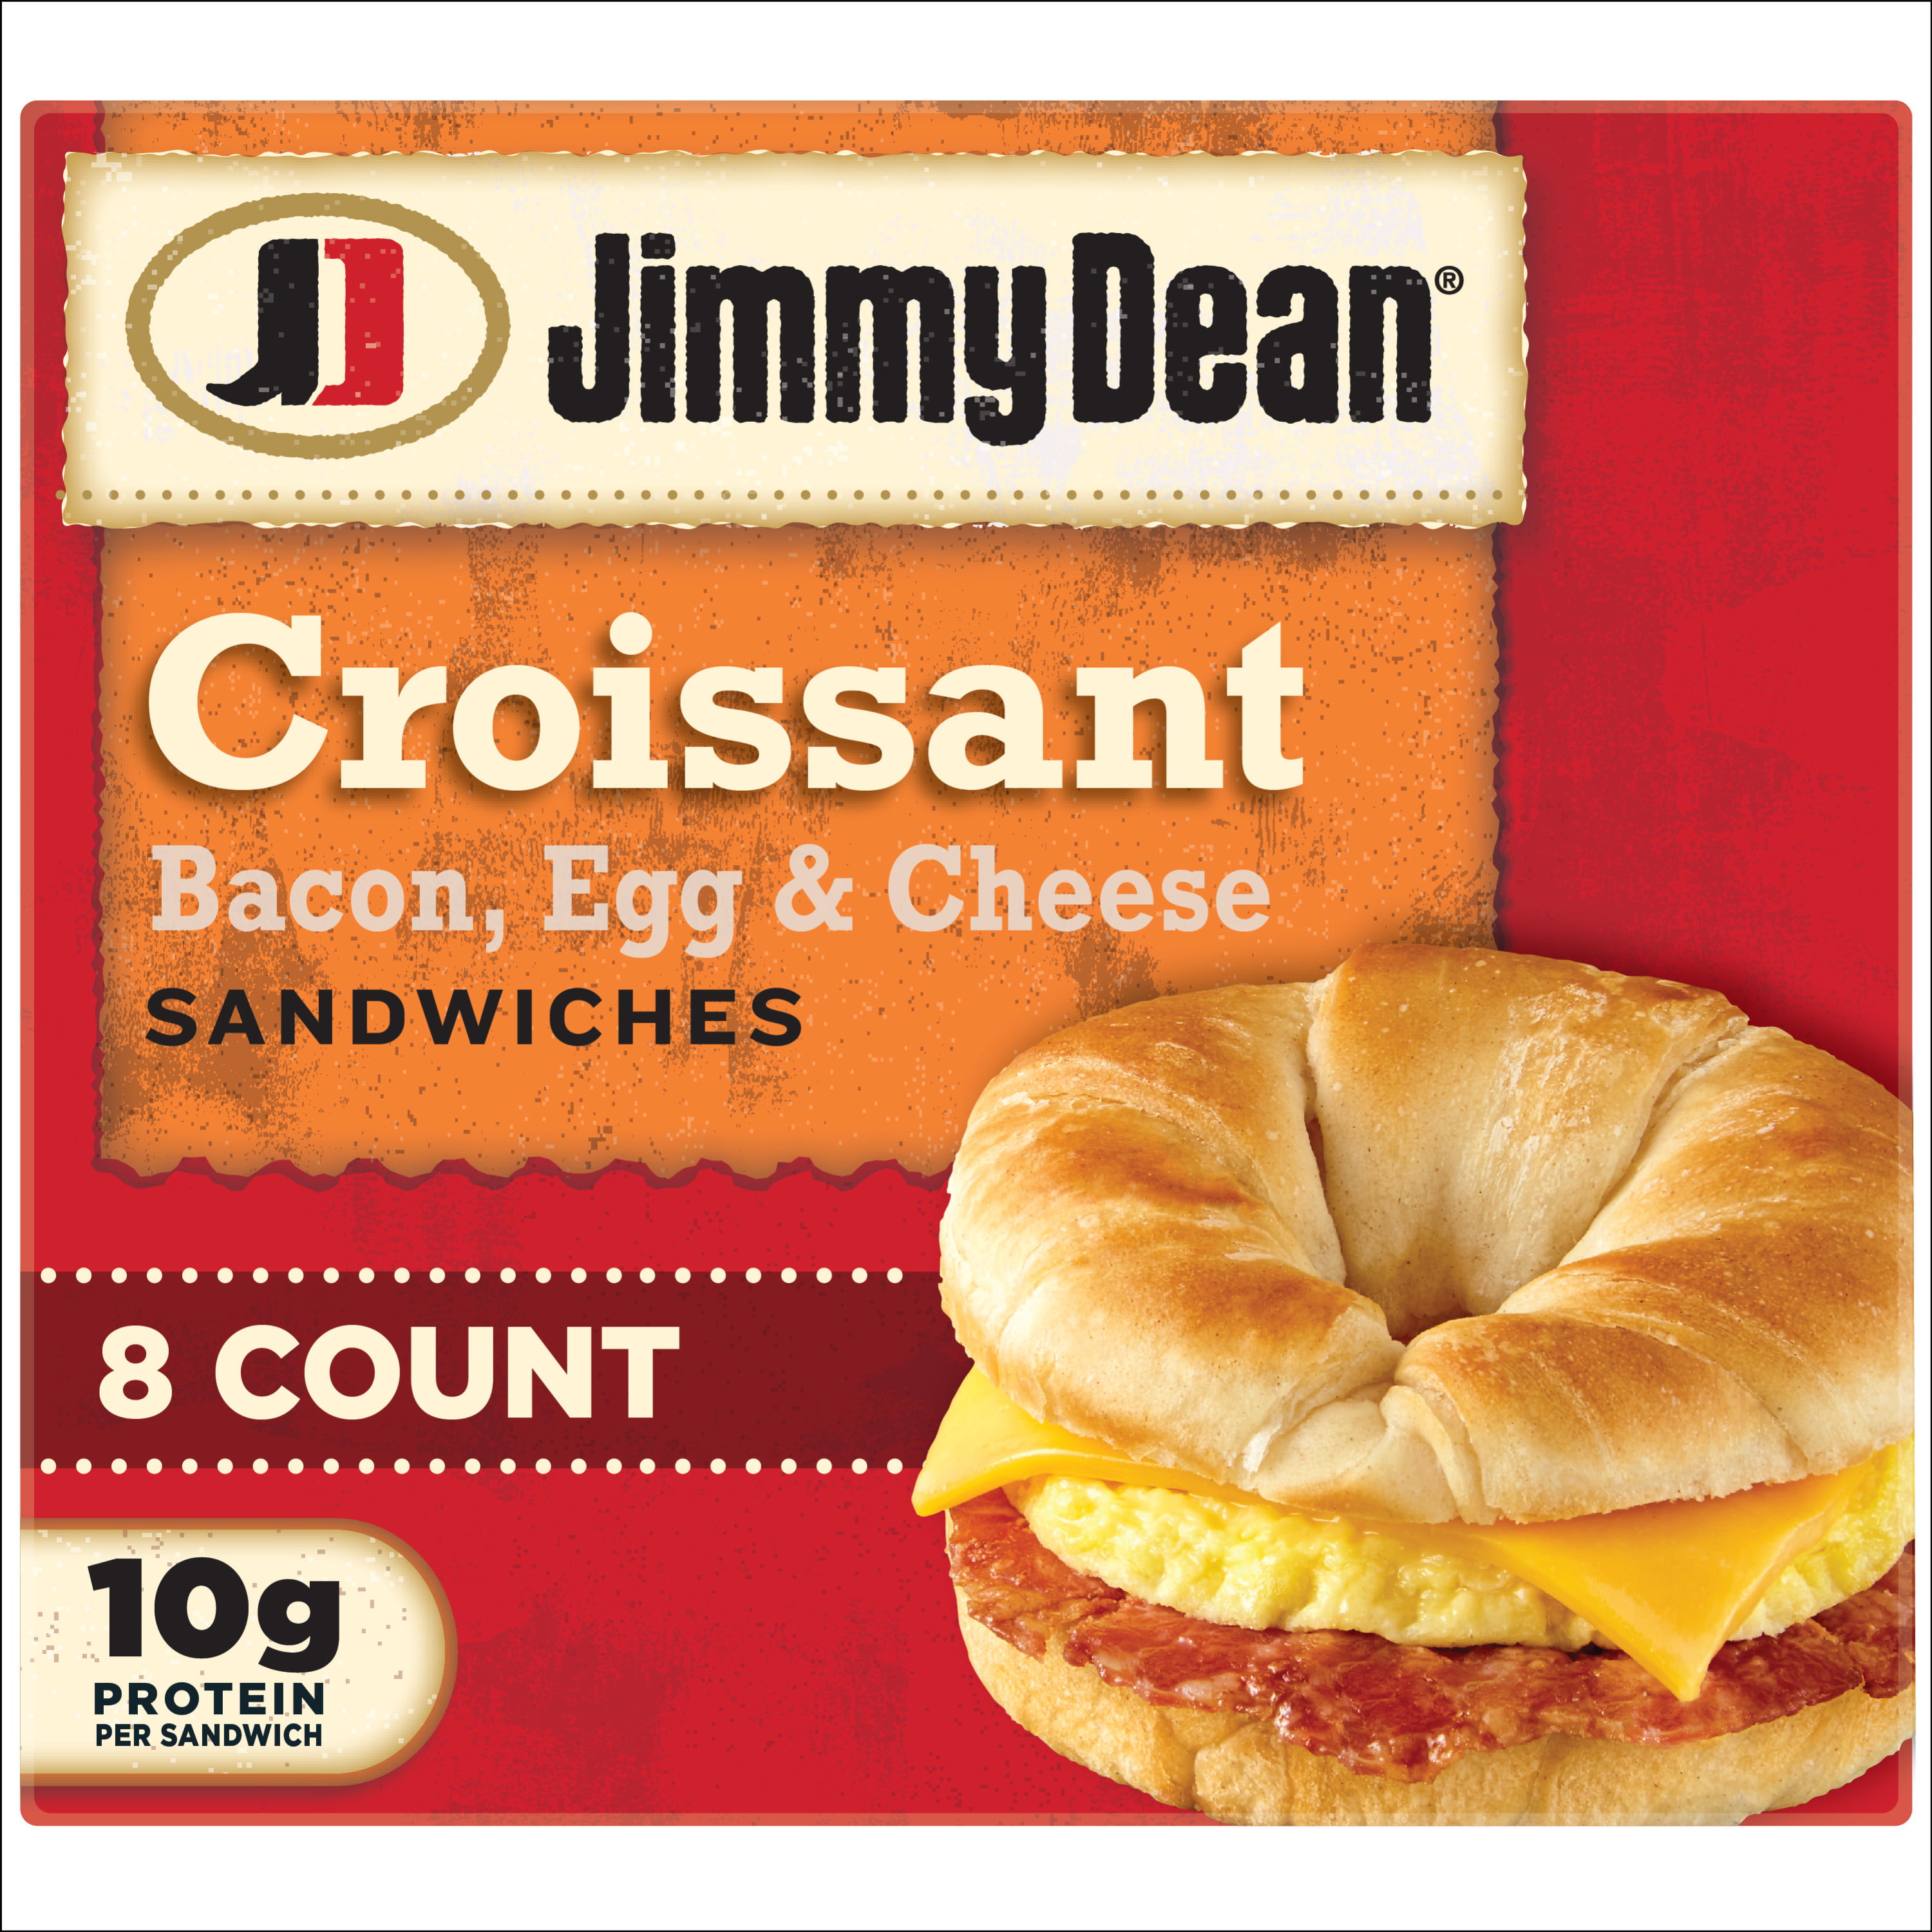 Jimmy Dean Bacon Egg & Cheese Croissant Sandwich, 28.8 oz, 8 Count (Frozen)